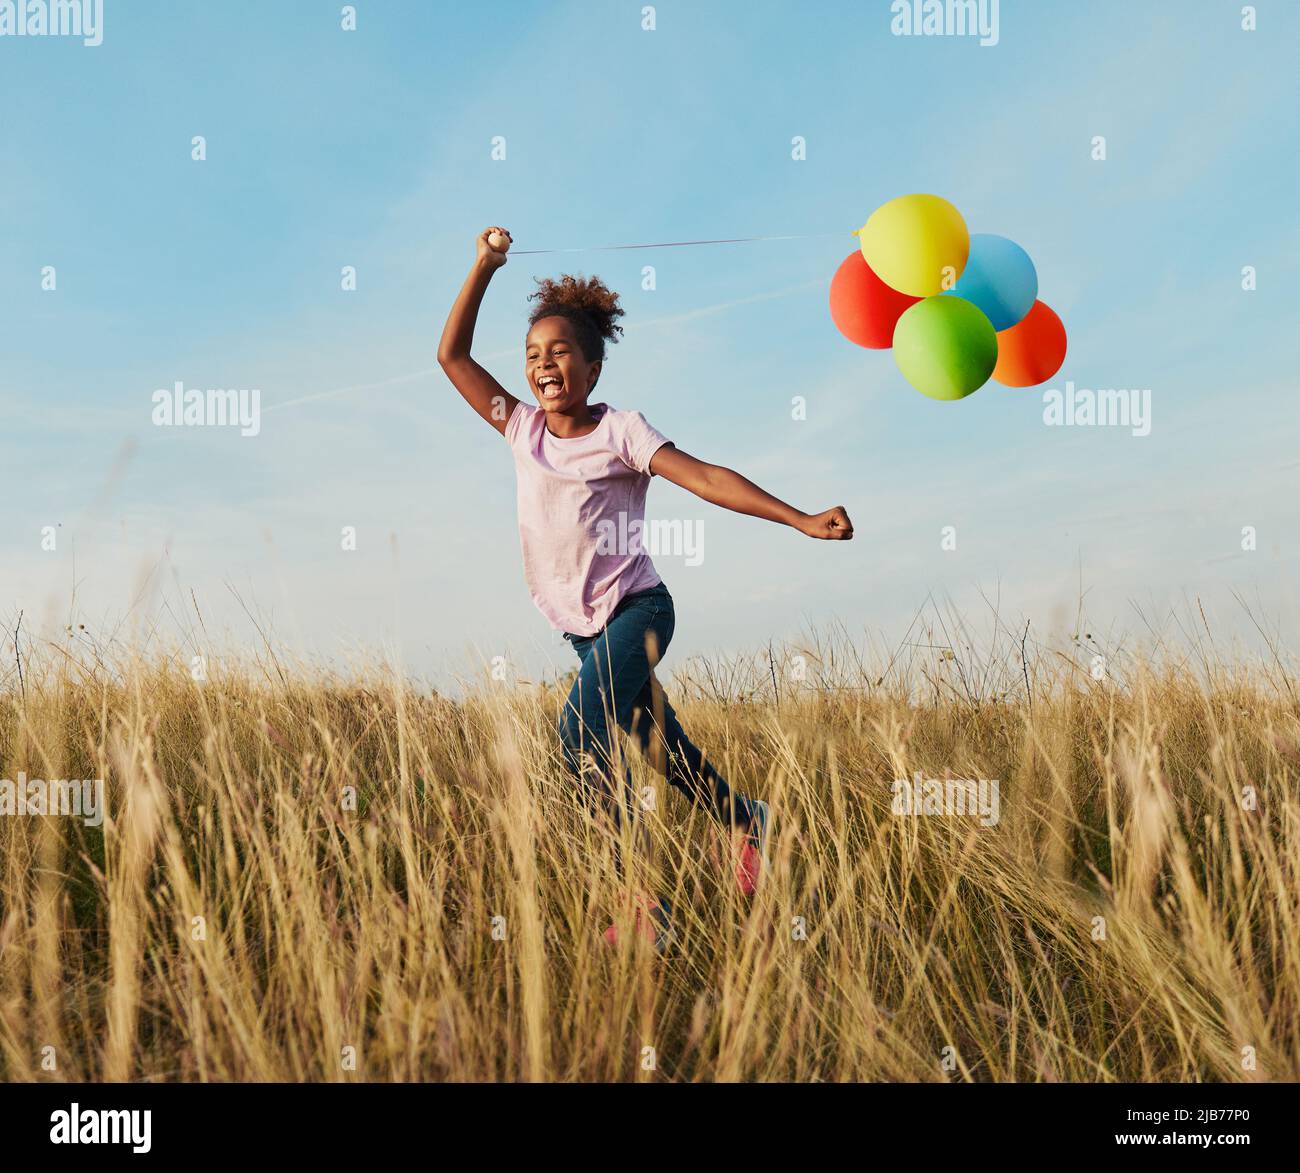 bambino estate divertimento lifestyle amico balloon outdoor ragazza campo gioia infanzia eseguire cheerfu giocare ragazzo colorato Foto Stock